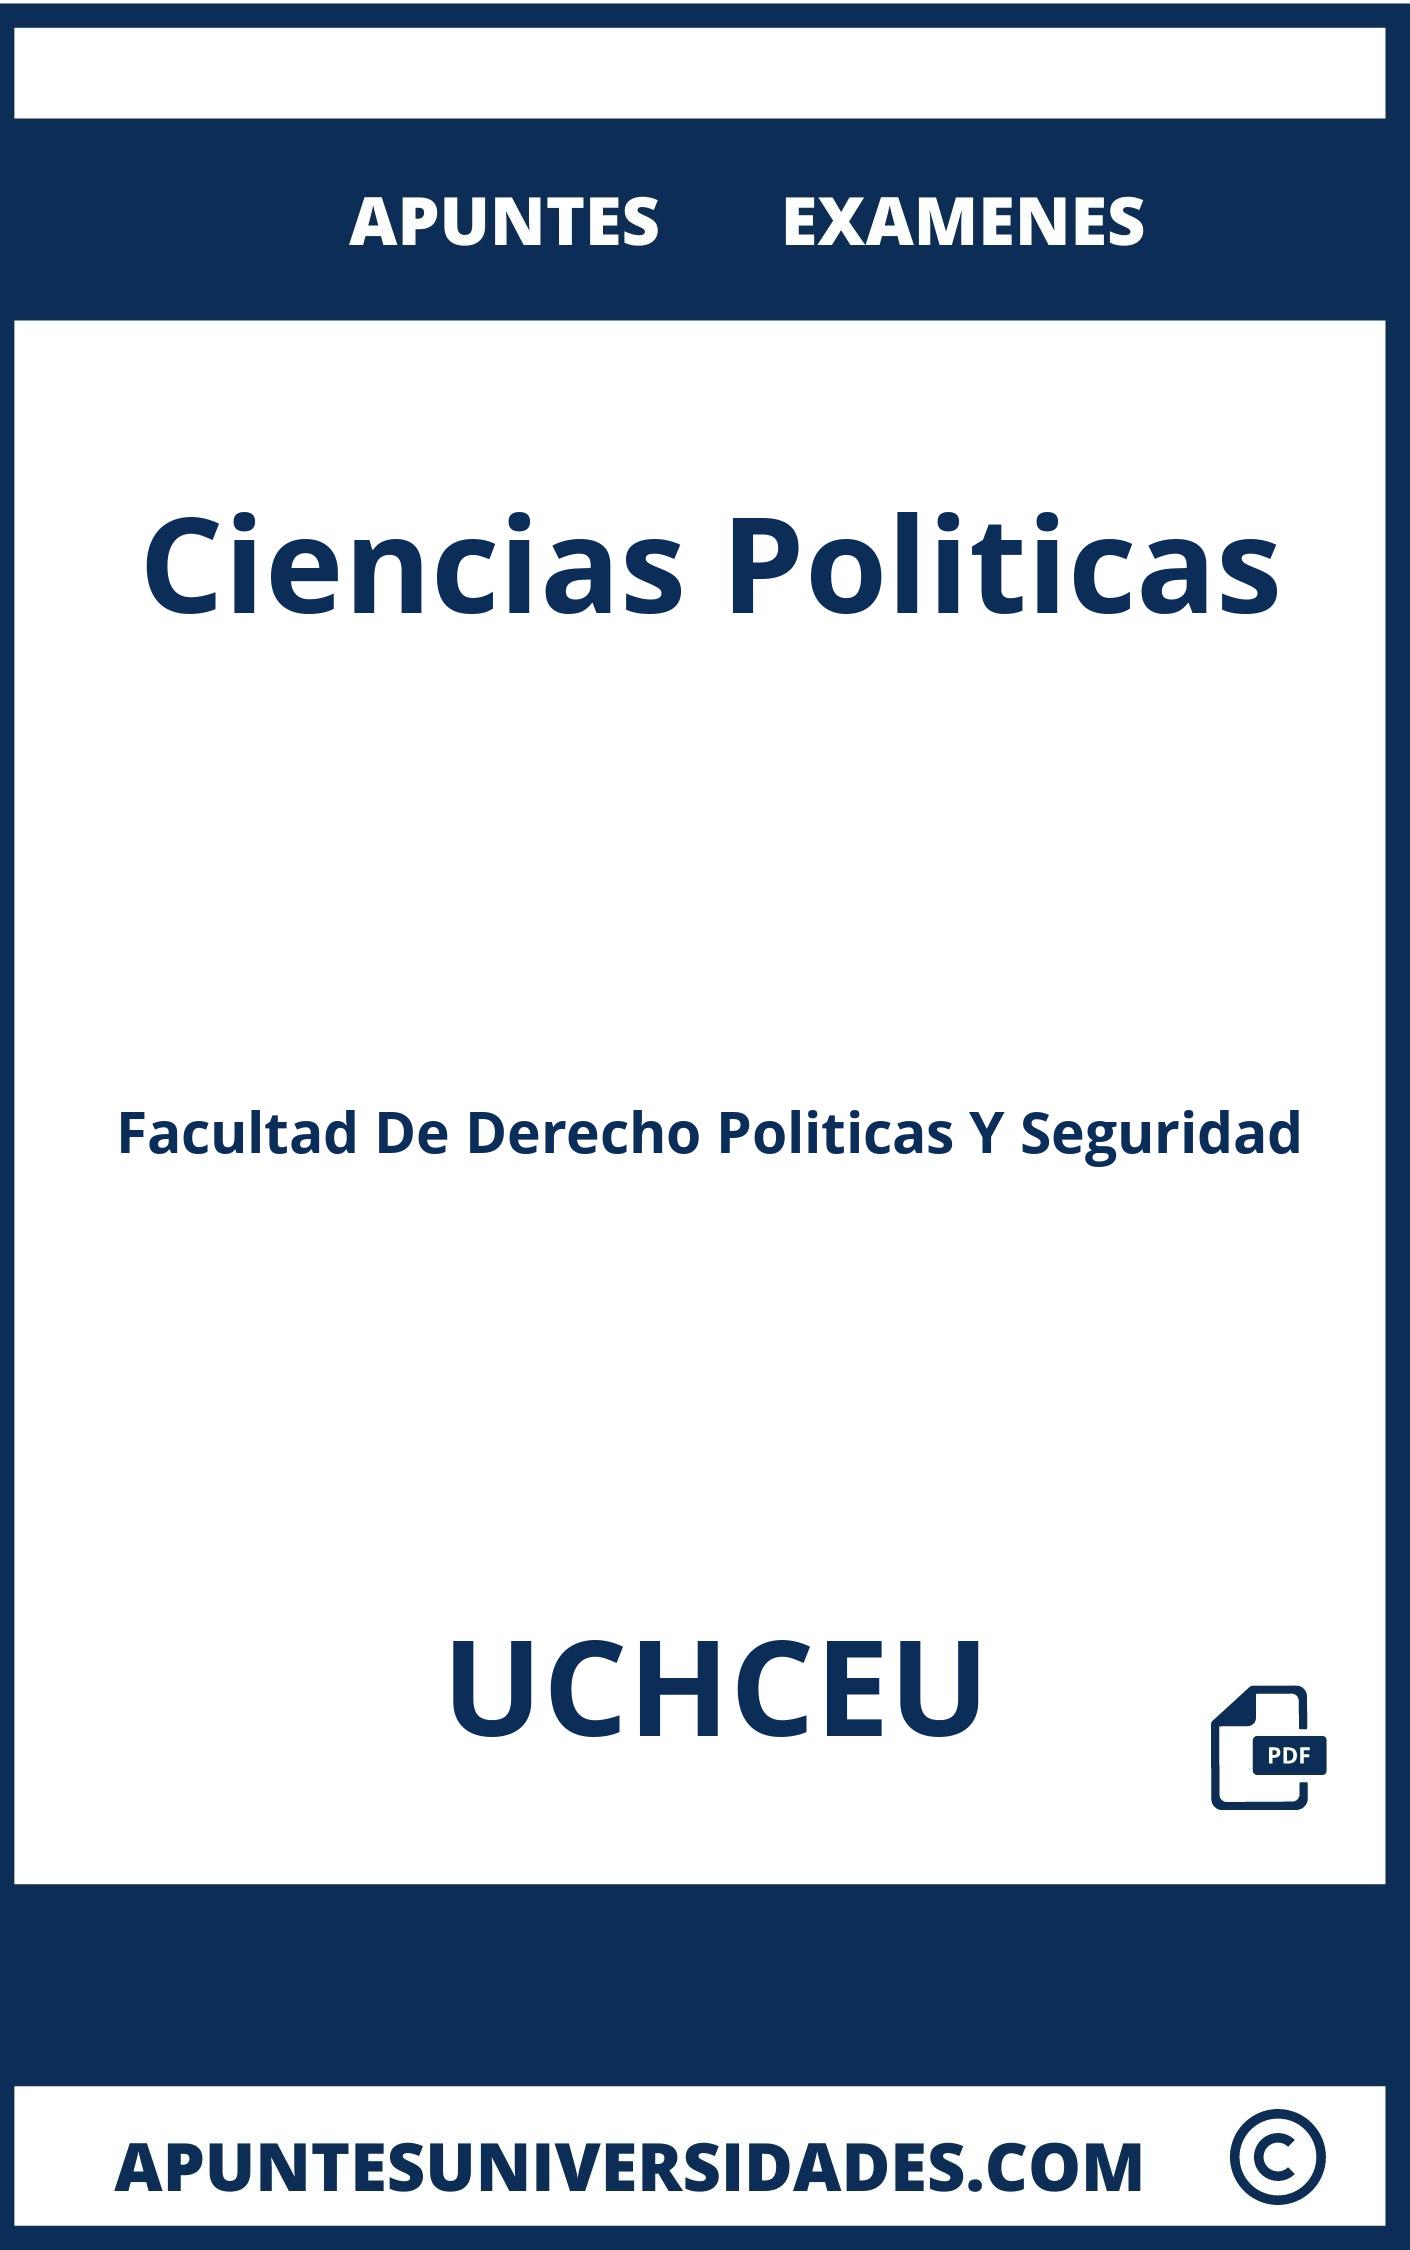 Apuntes y Examenes Ciencias Politicas UCHCEU